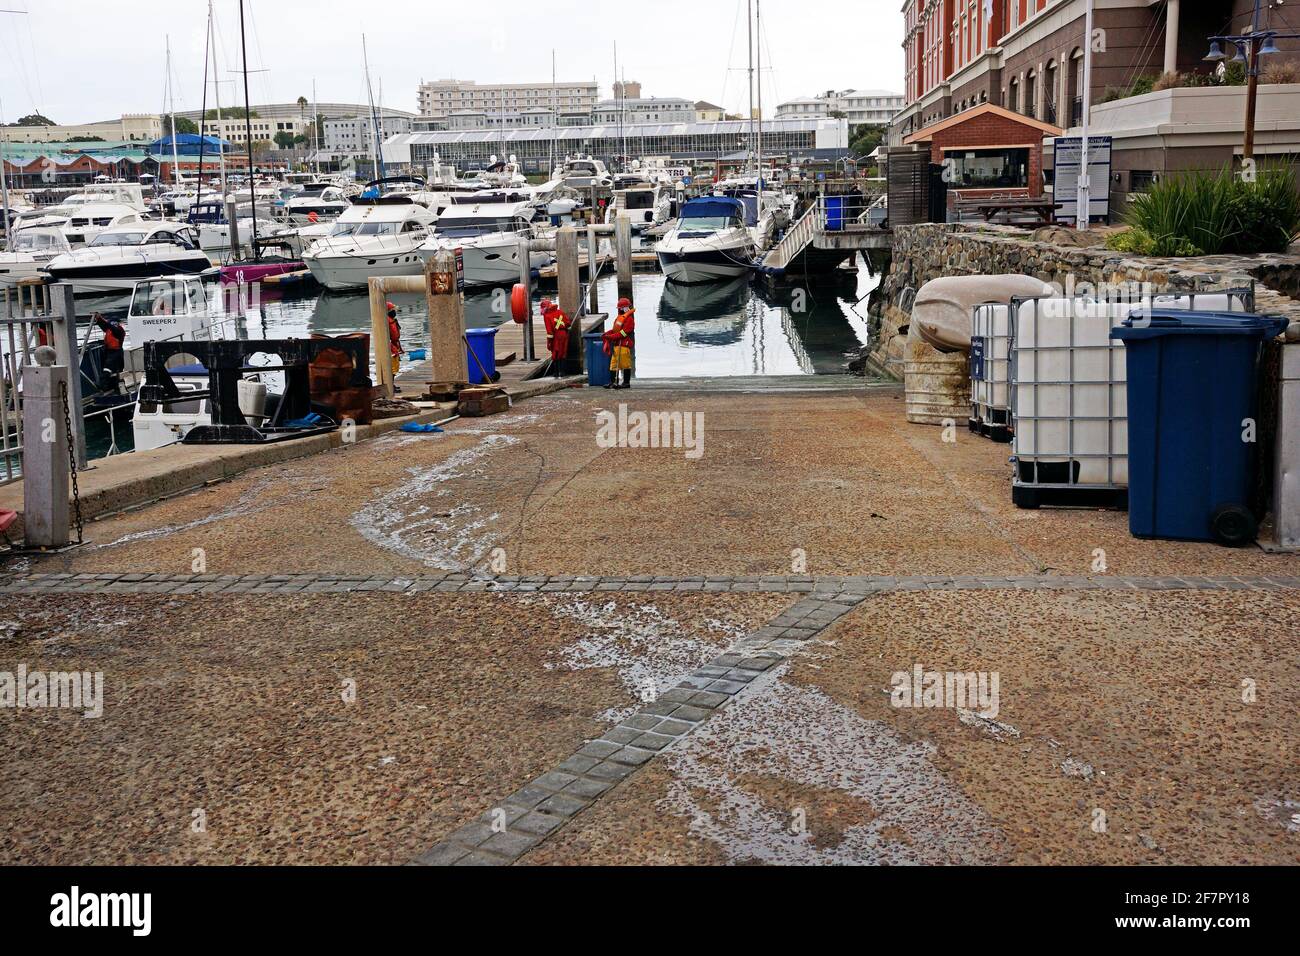 La squadra marina pulisce l'acqua al V&A Waterfront dopo la morte di massa di mullet e sgombro a causa della privazione di ossigeno causata dal sovraffollamento nel bacino. Foto Stock